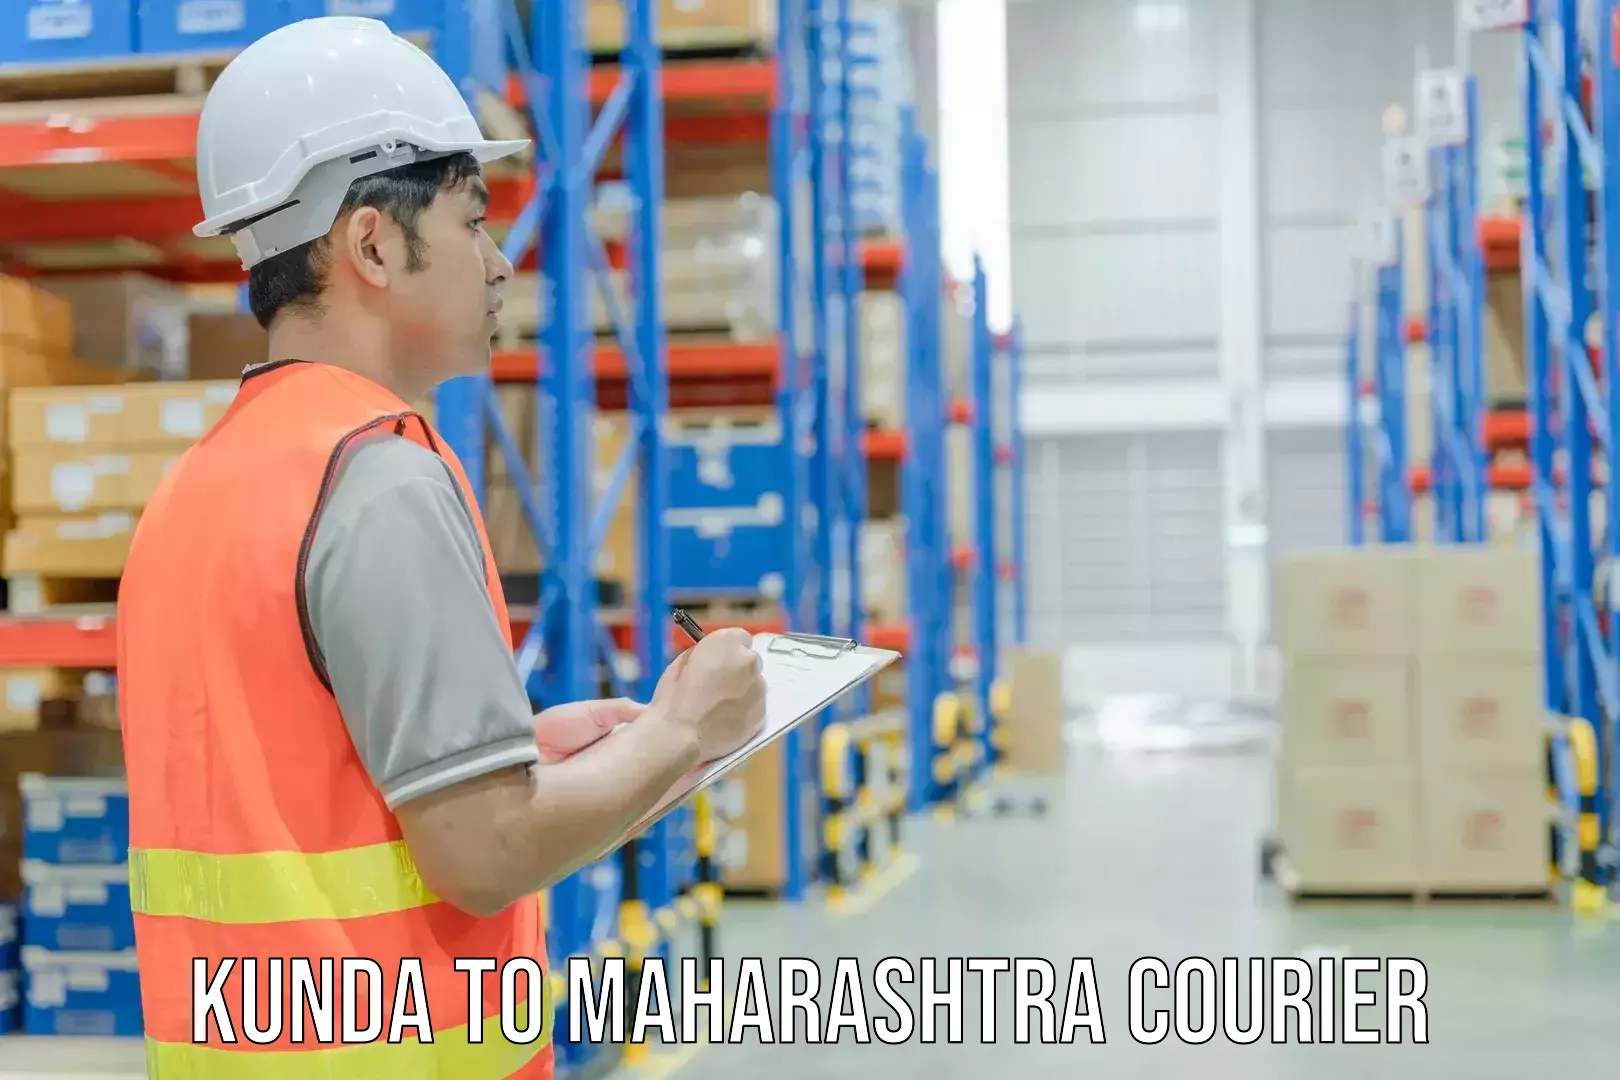 Door-to-door freight service Kunda to Maharashtra